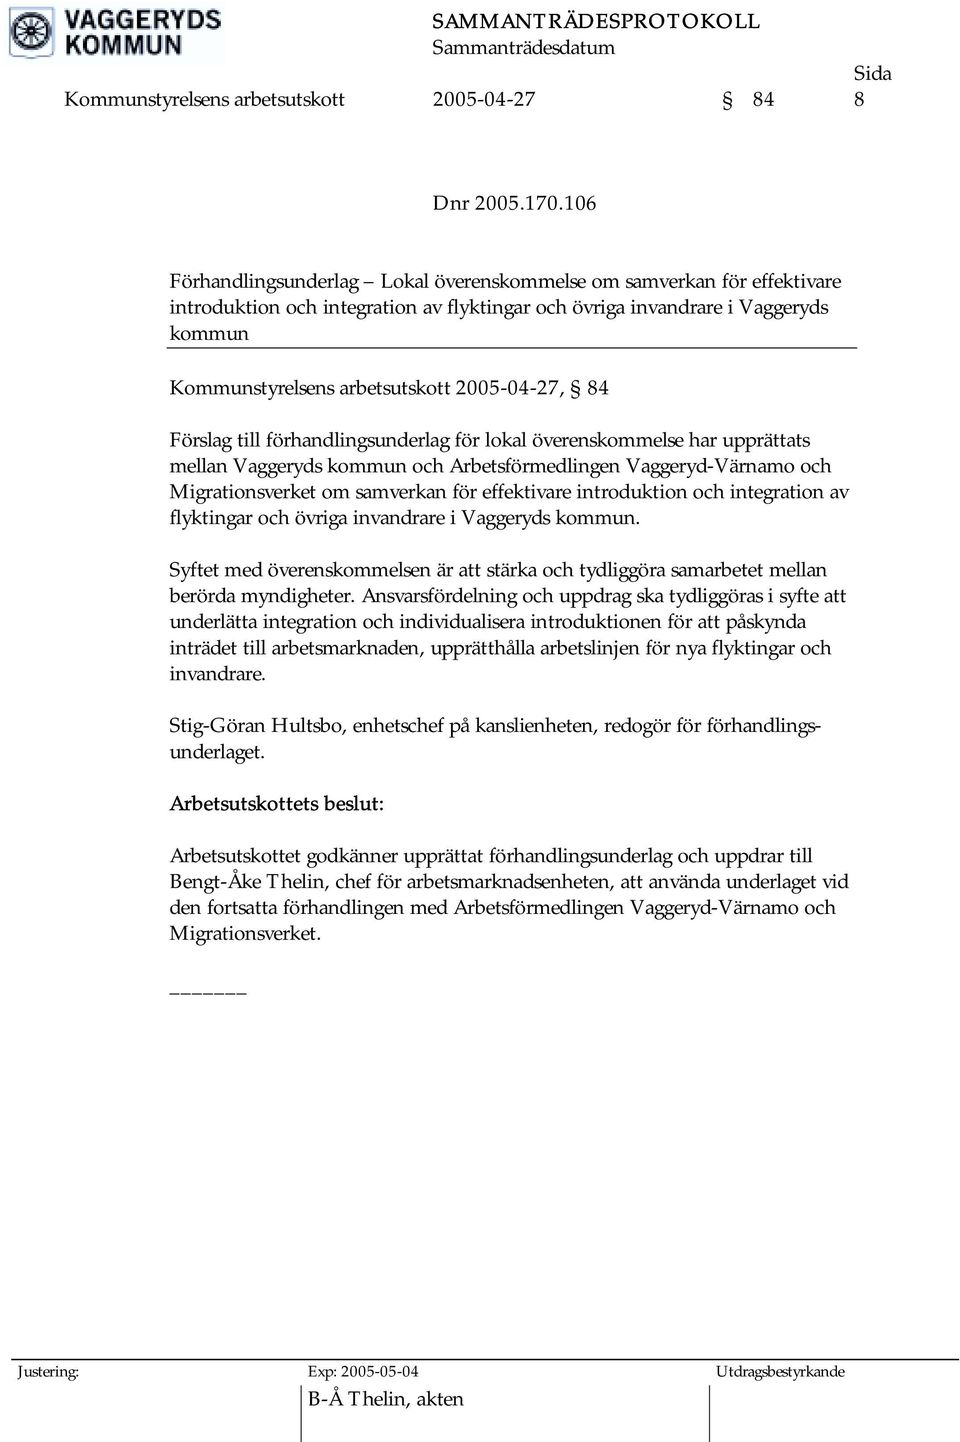 2005-04-27, 84 Förslag till förhandlingsunderlag för lokal överenskommelse har upprättats mellan Vaggeryds kommun och Arbetsförmedlingen Vaggeryd-Värnamo och Migrationsverket om samverkan för